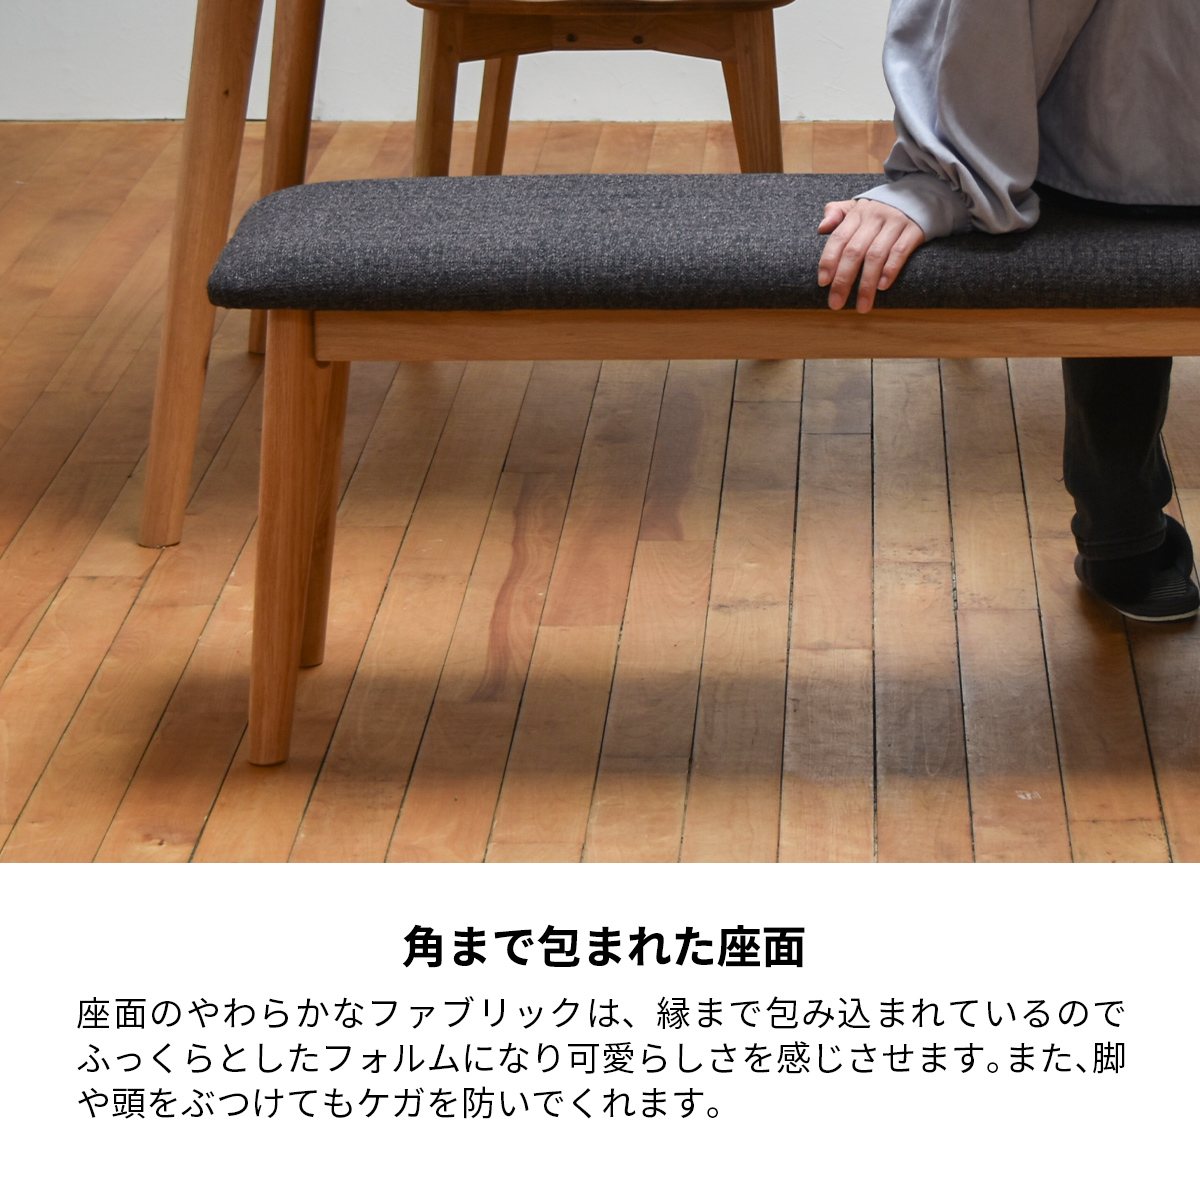 大川家具 ジャーナル ベンチ 椅子 ダイニング ナチュラル ファブリック 